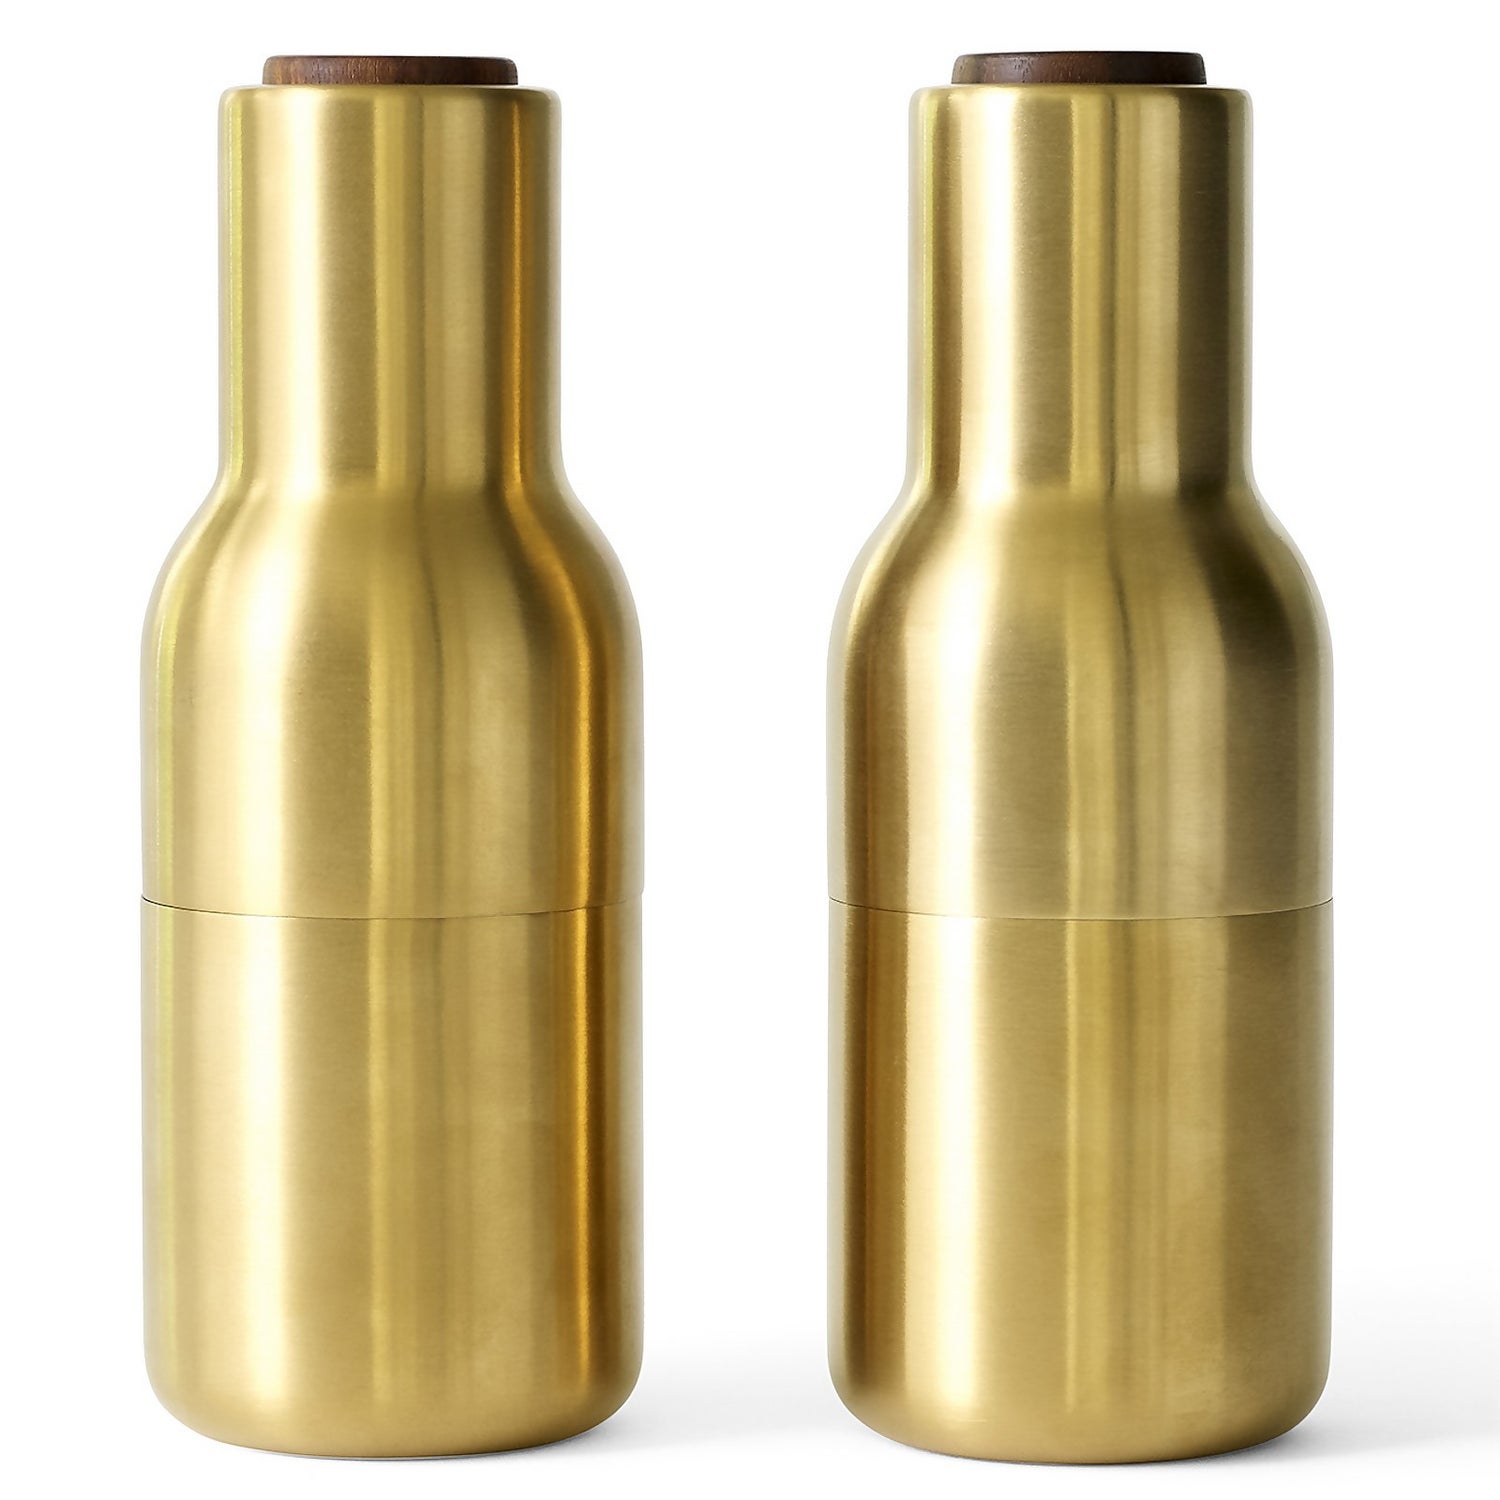 Menu Bottle Grinder - Brushed Brass - Set of 2